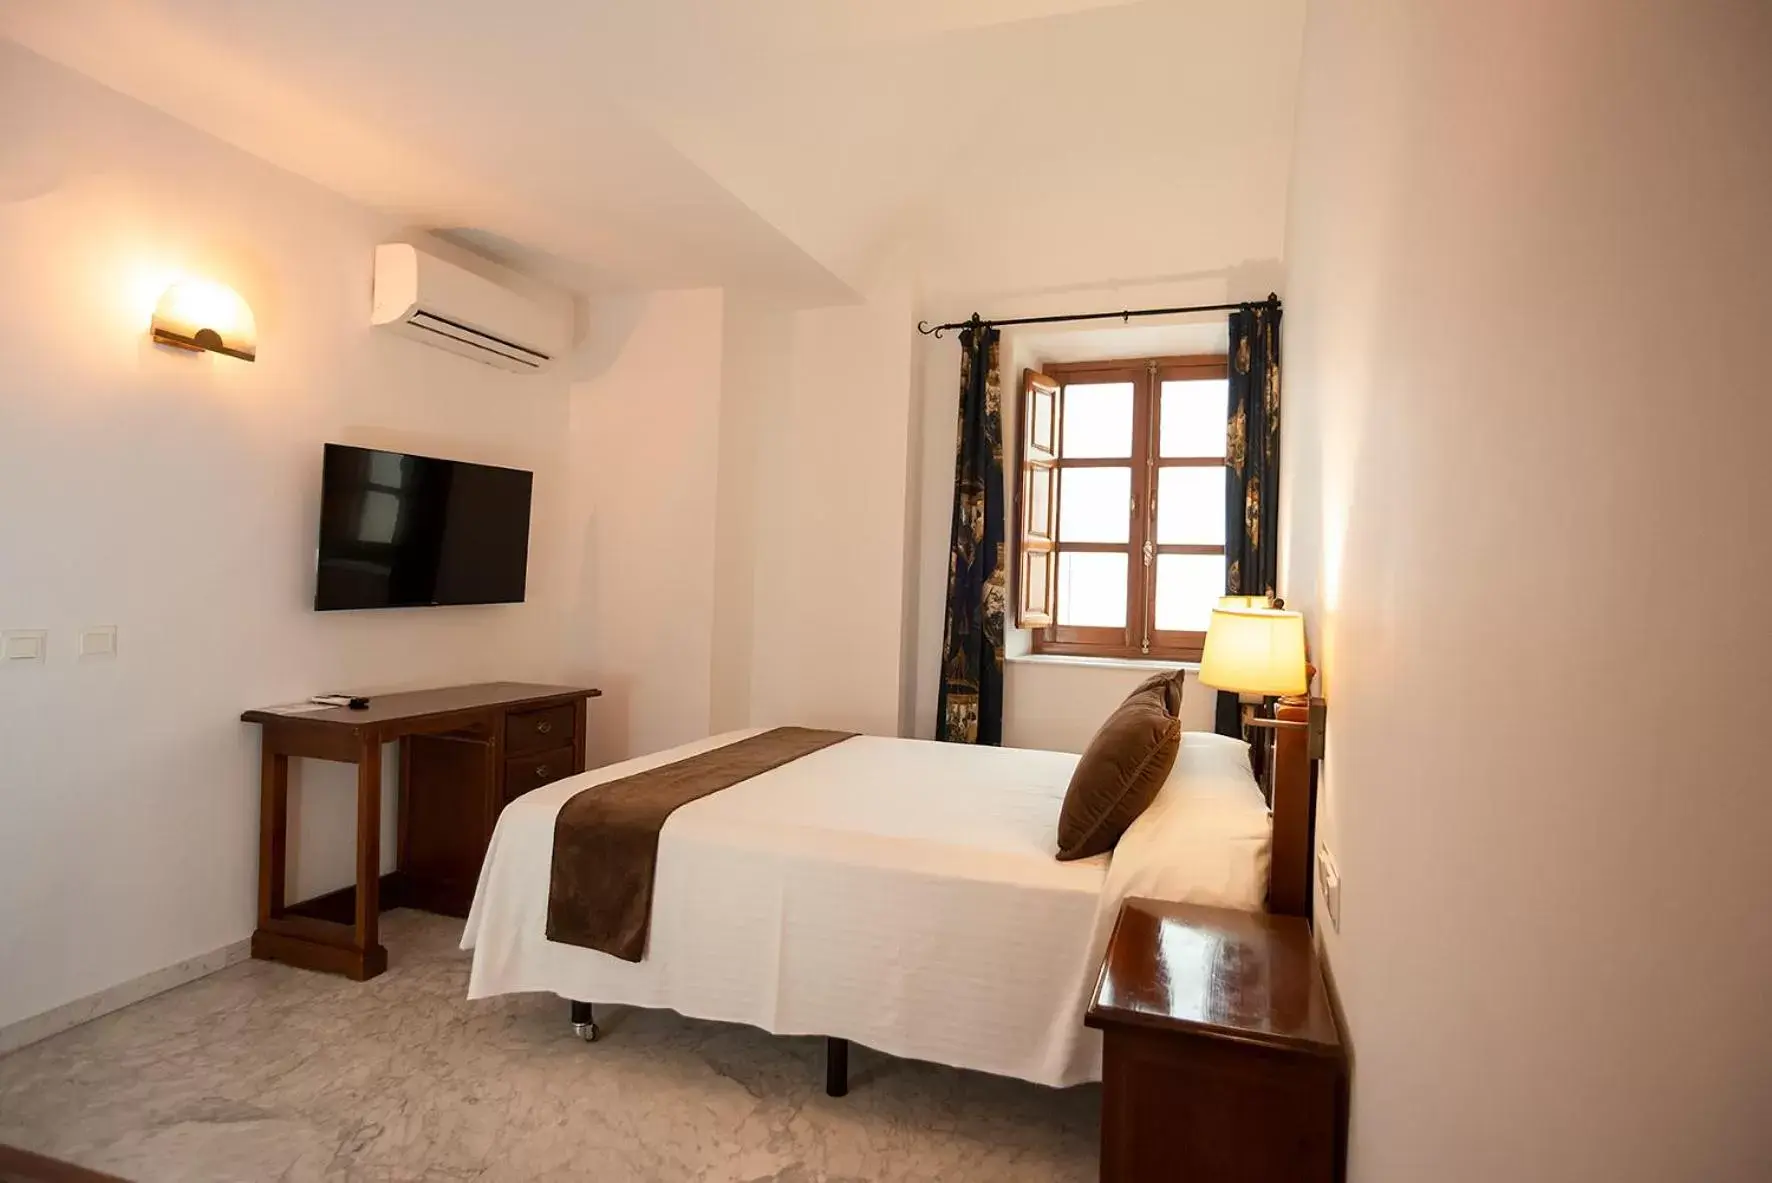 Bedroom in Hotel Casa Palacio la Sal